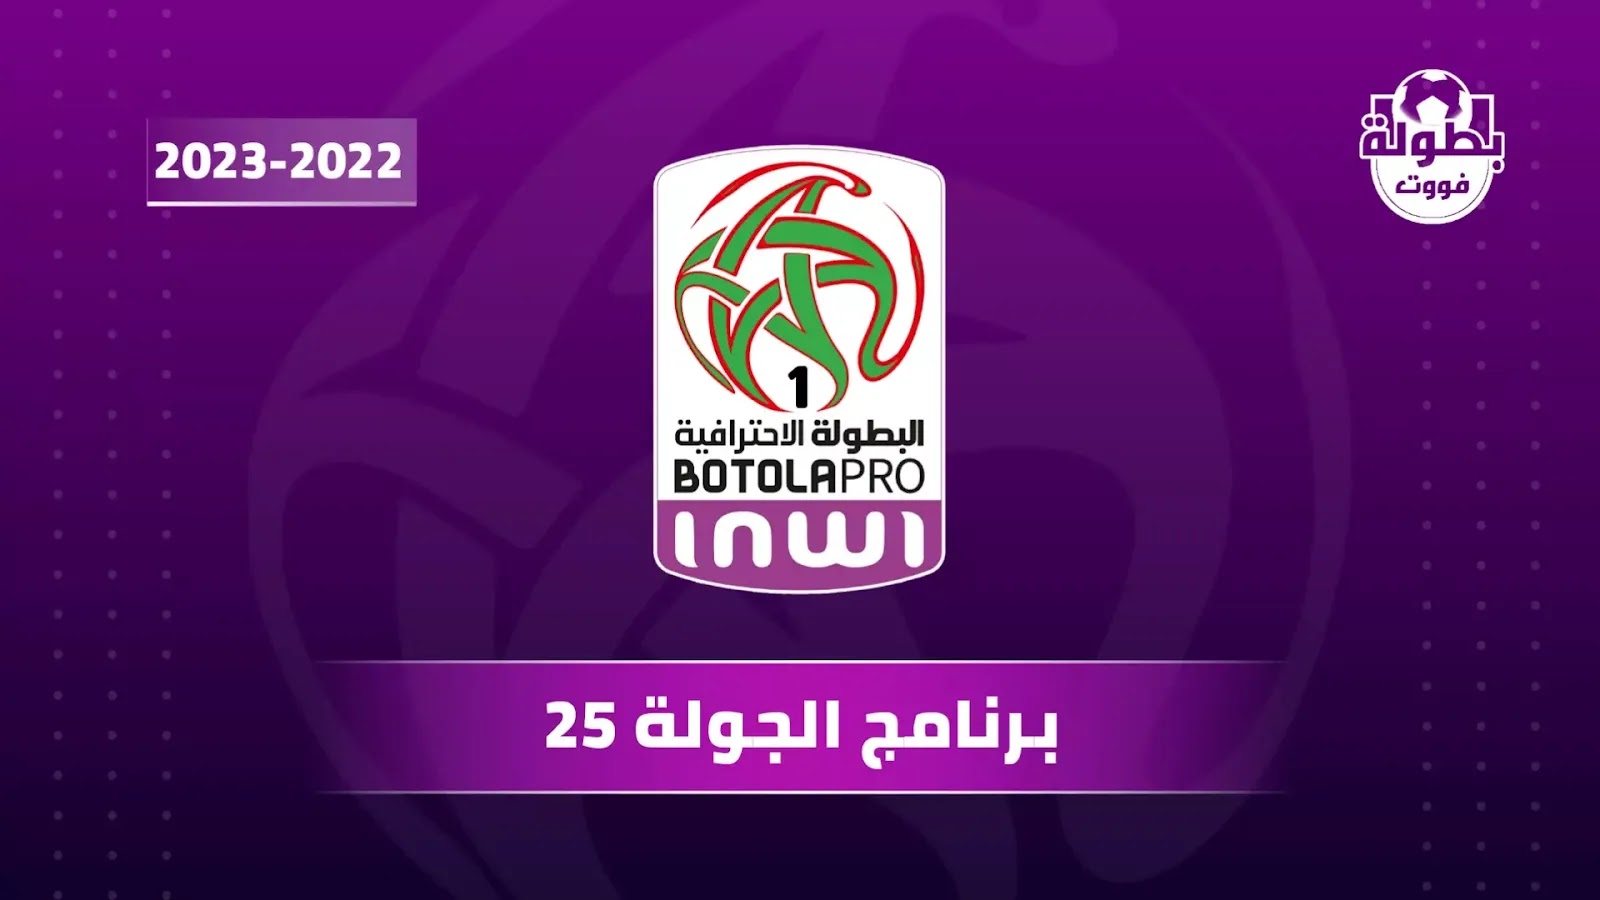 برنامج الجولة 25 من البطولة الإحترافية المغربية 2023